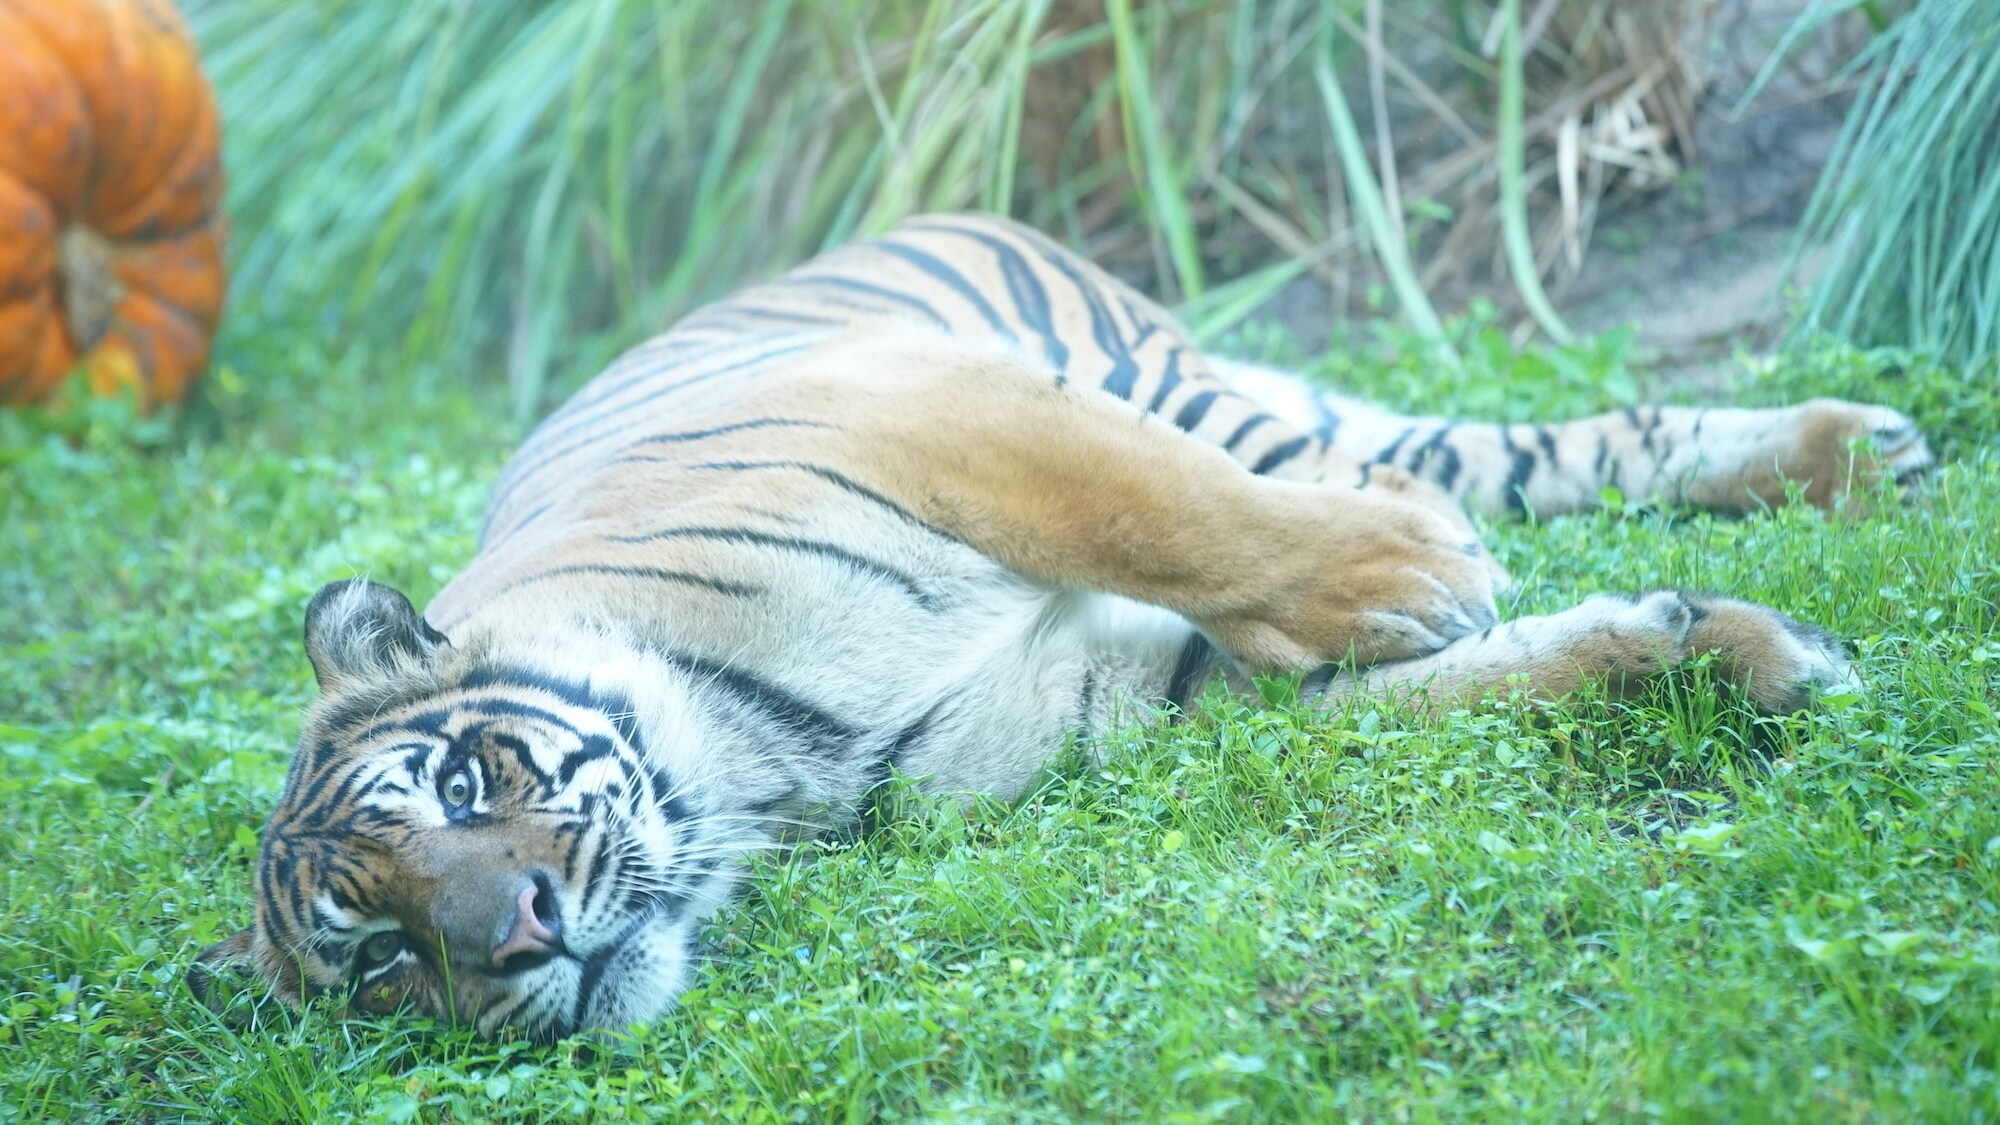 Sumatran tiger at the Maharajah Jungle Trek. (Disney)